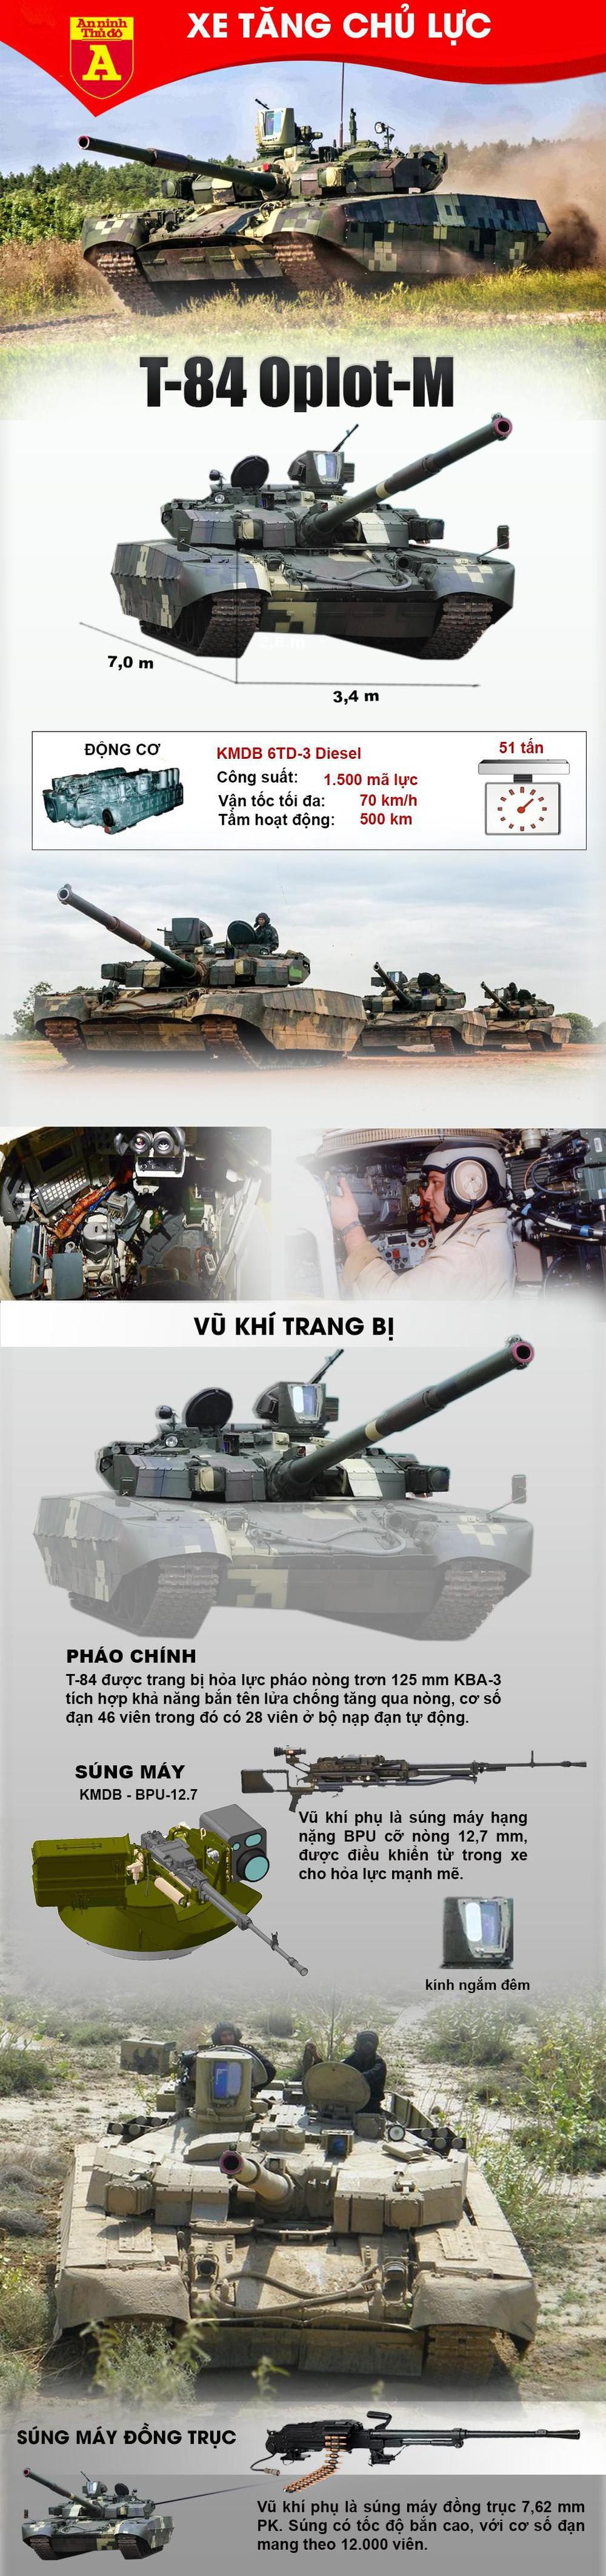 Siêu tăng T-84 Oplot-M sẽ bị "tuyệt chủng" nếu Ukraine tung vào chiến trường? - Ảnh 1